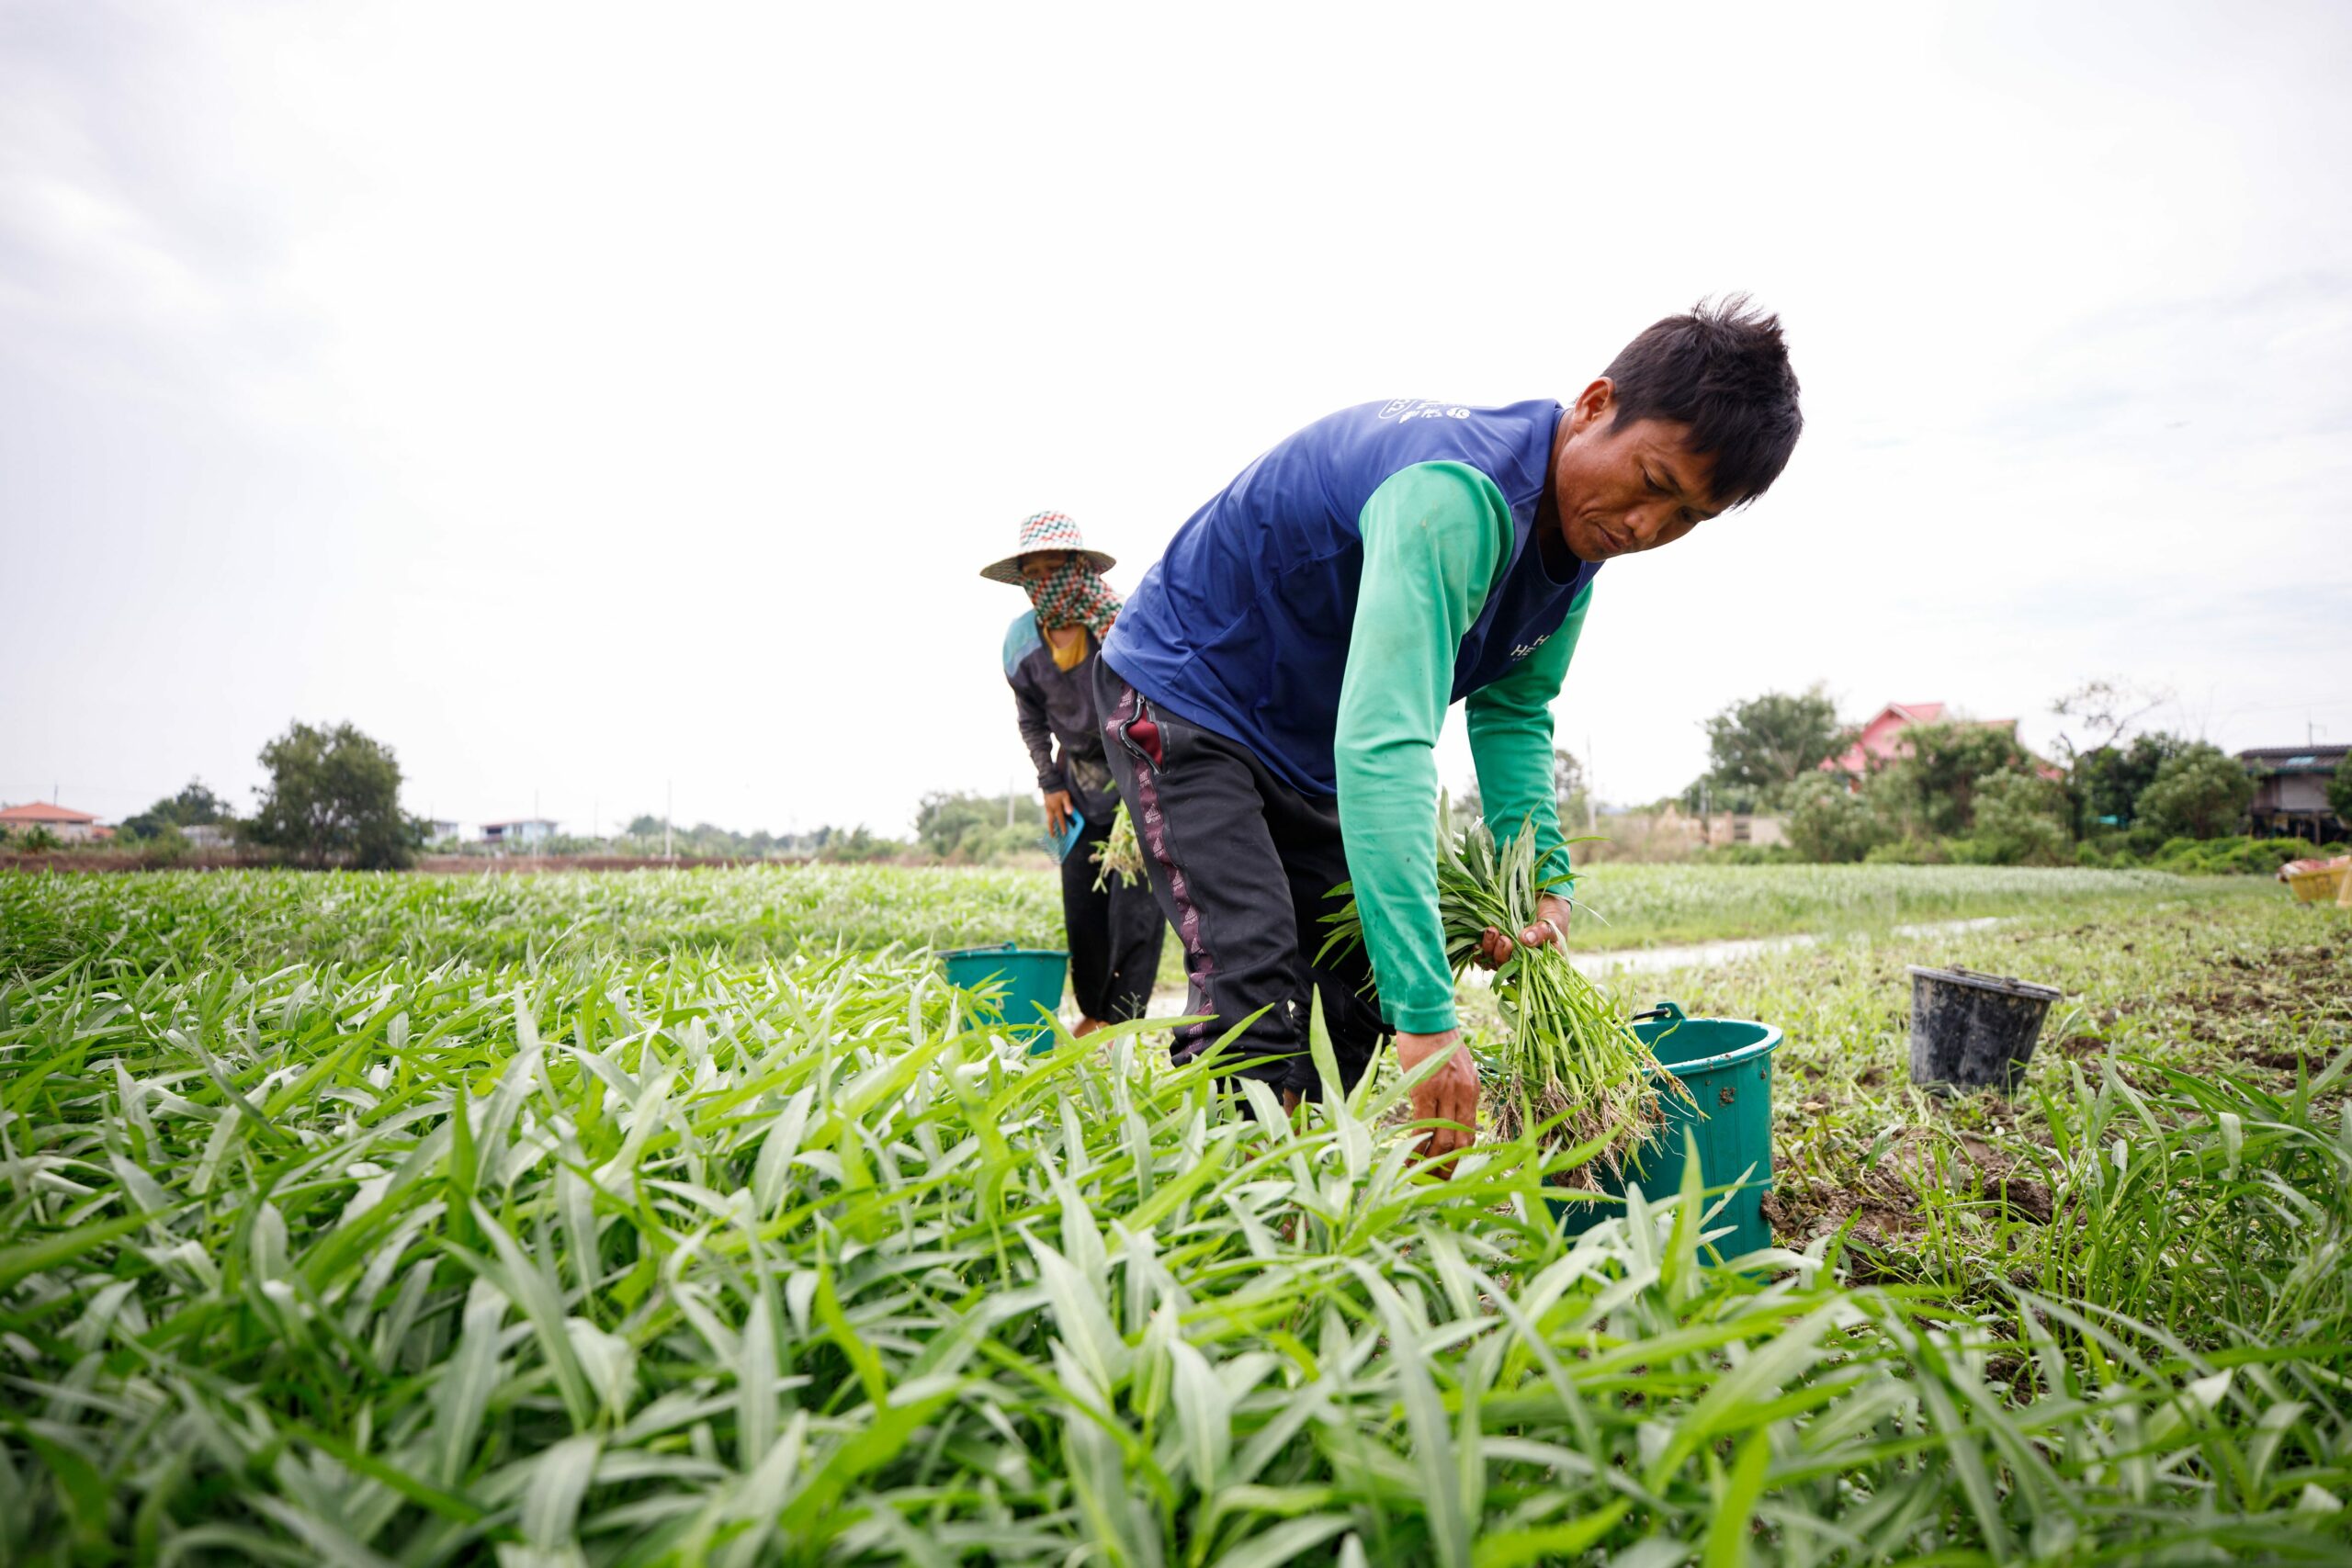 เกษตรกรคนขยัน วัย 66 เช่าที่ปลูกผัก เก็บผลผลิตขายในเซเว่น ได้จับเงินทุกวัน 